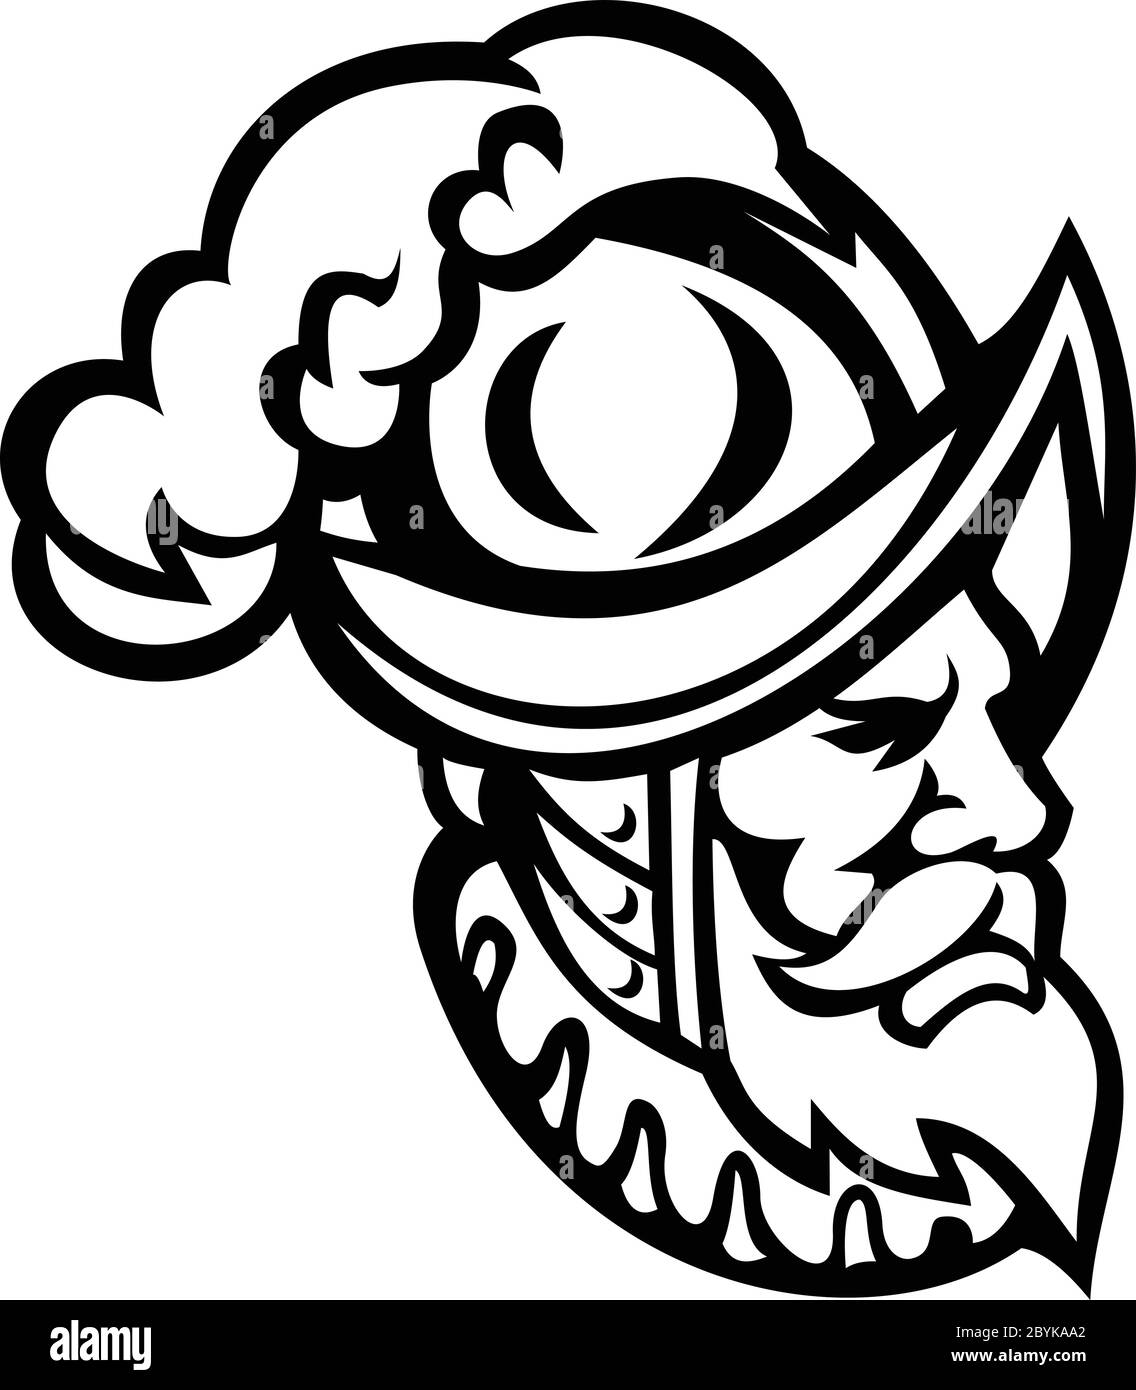 Icône mascotte illustration de tête d'un conquistador Espagnol portant un morion, type de casque ouvert hat utilisé à partir du milieu du xvie au début du 17e siècles Illustration de Vecteur